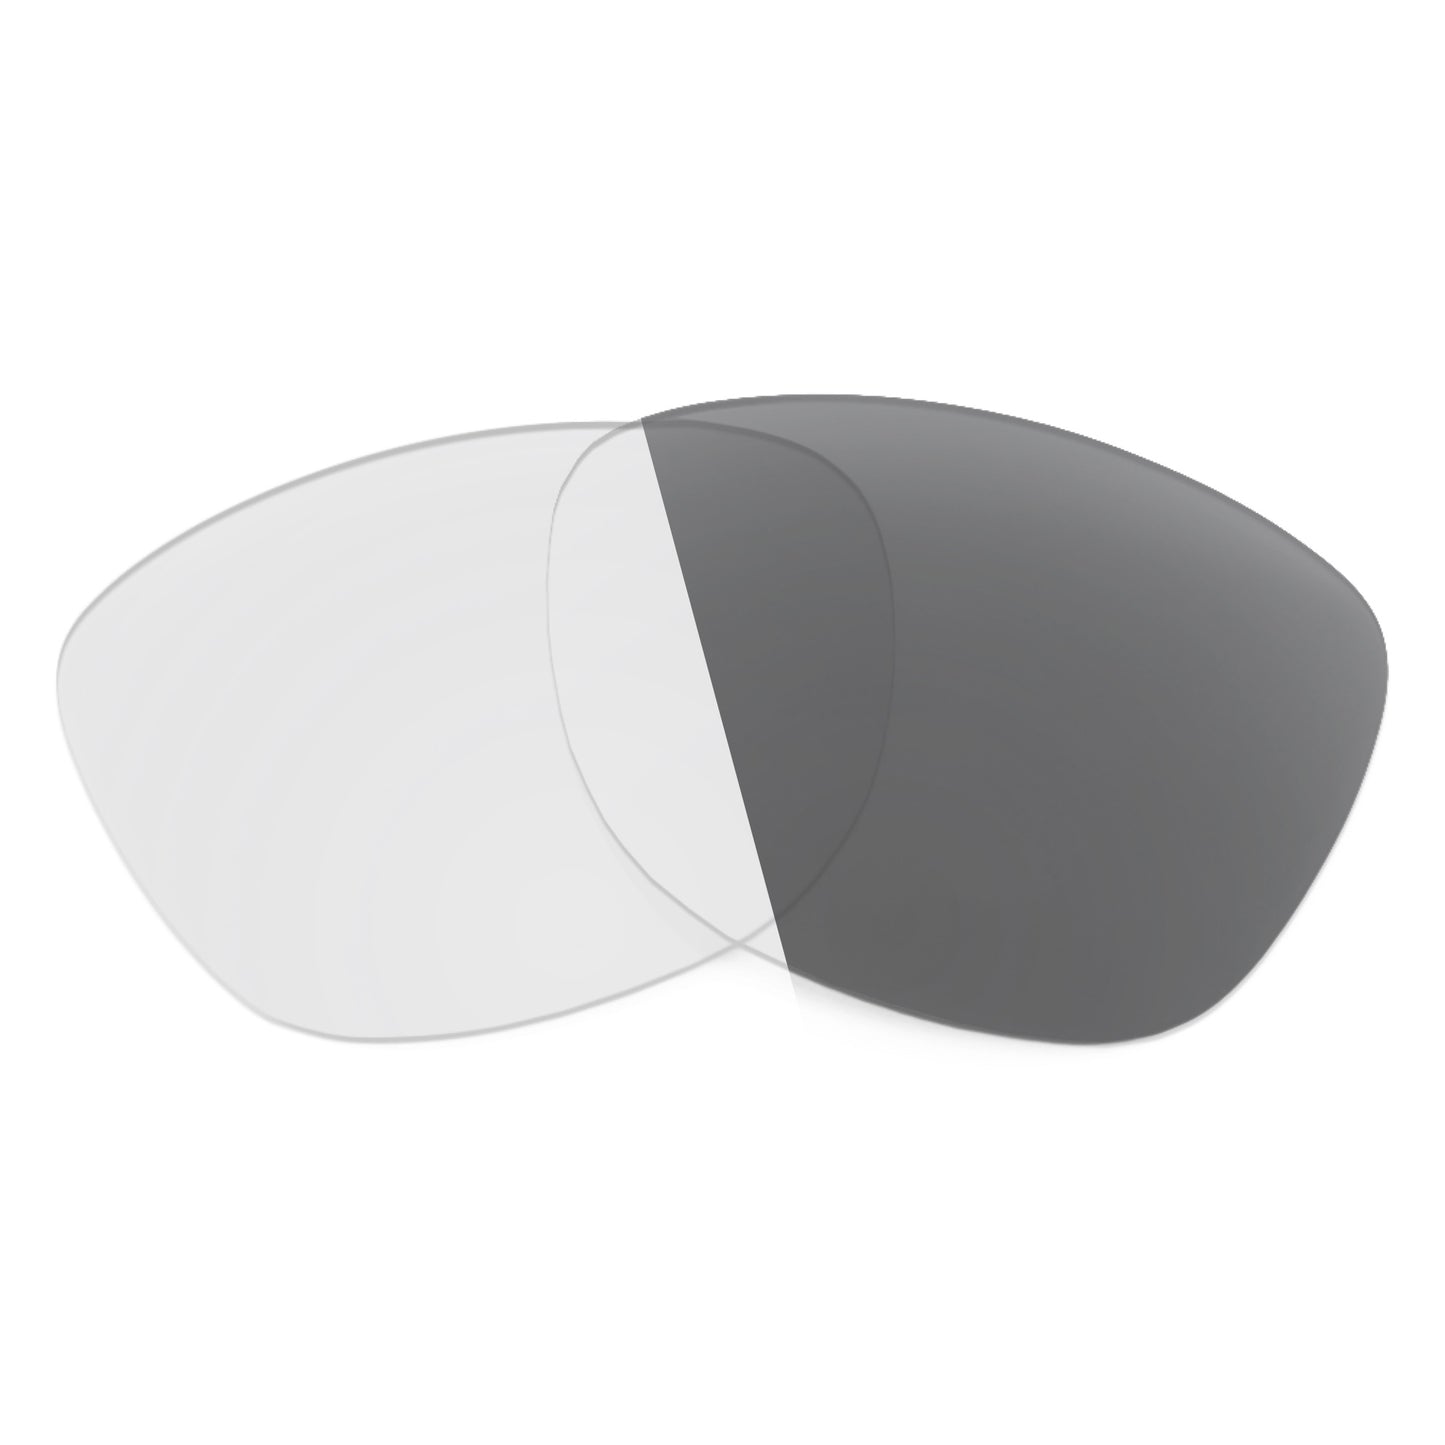 Revant replacement lenses for Spy Optic Sundowner Non-Polarized Adapt Gray Photochromic